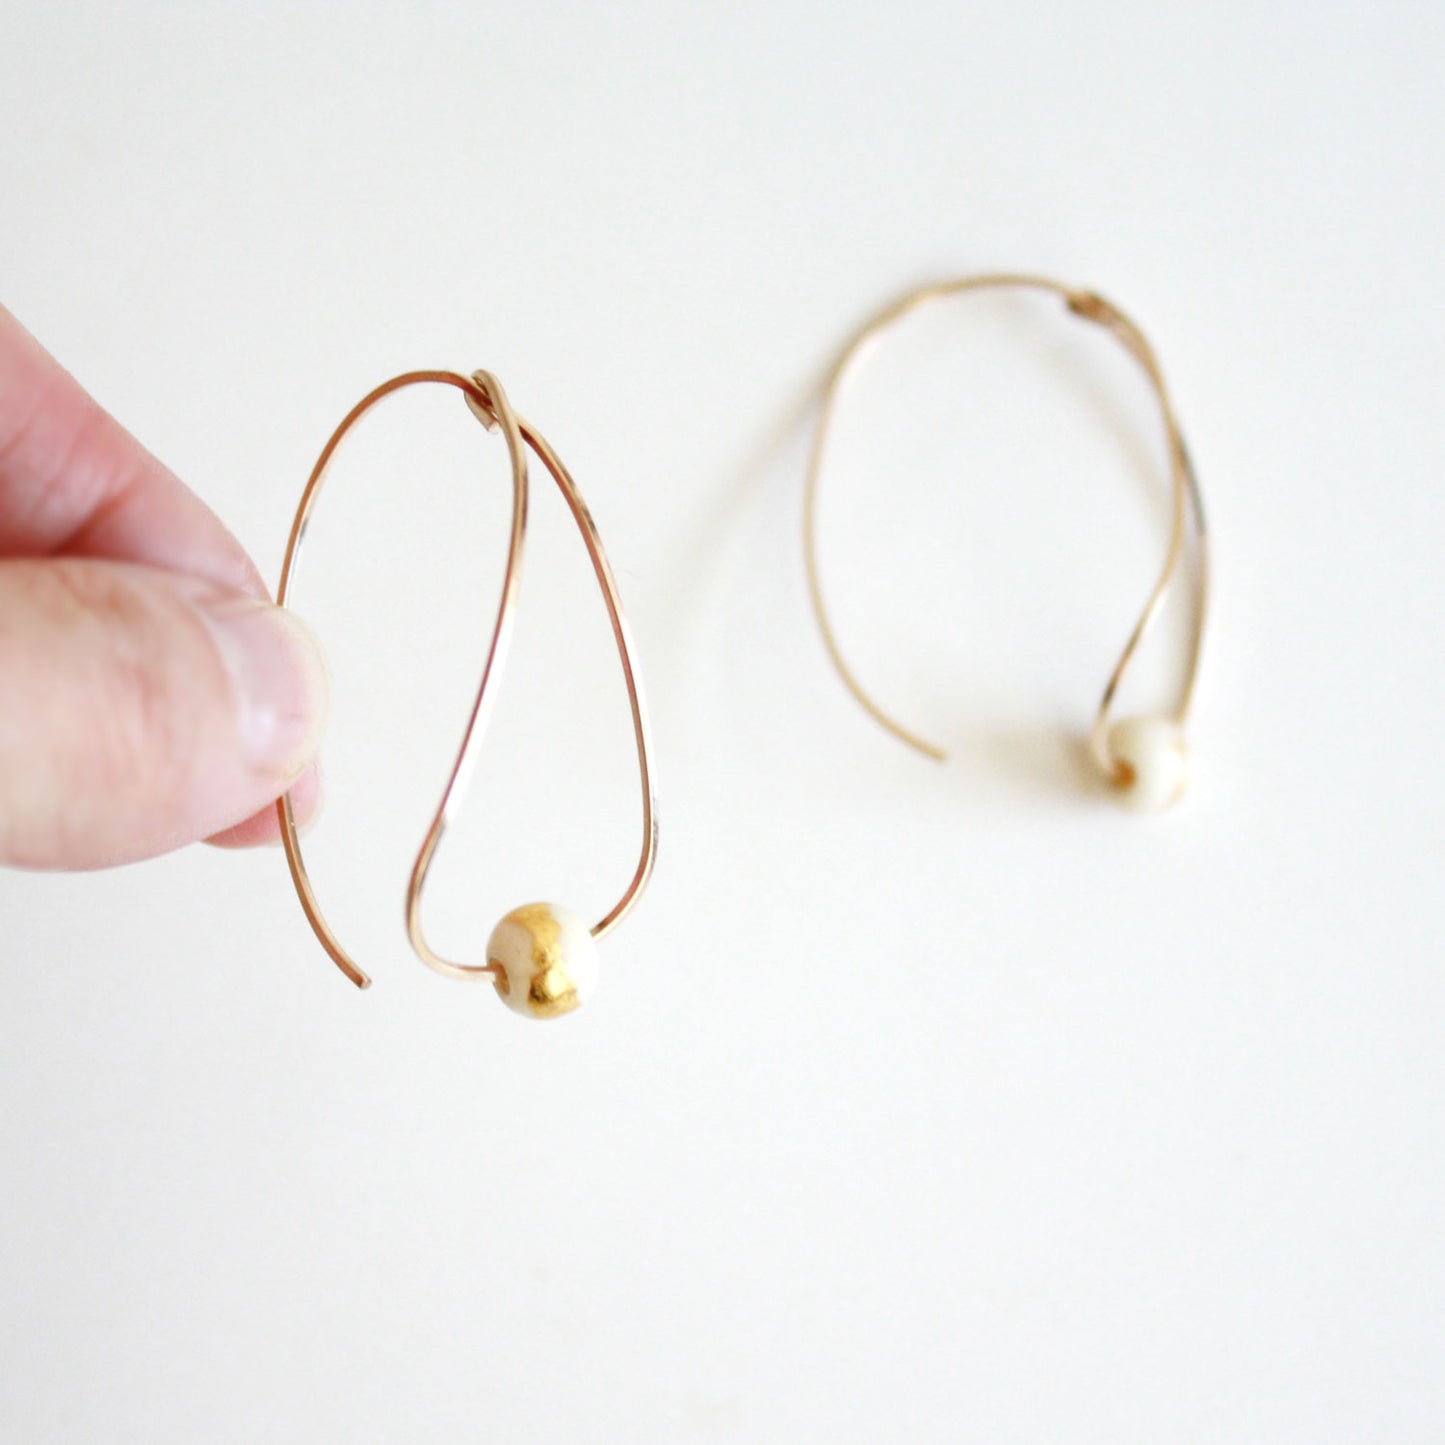 Teardrop Hoop Earrings - Gold Leaf - White